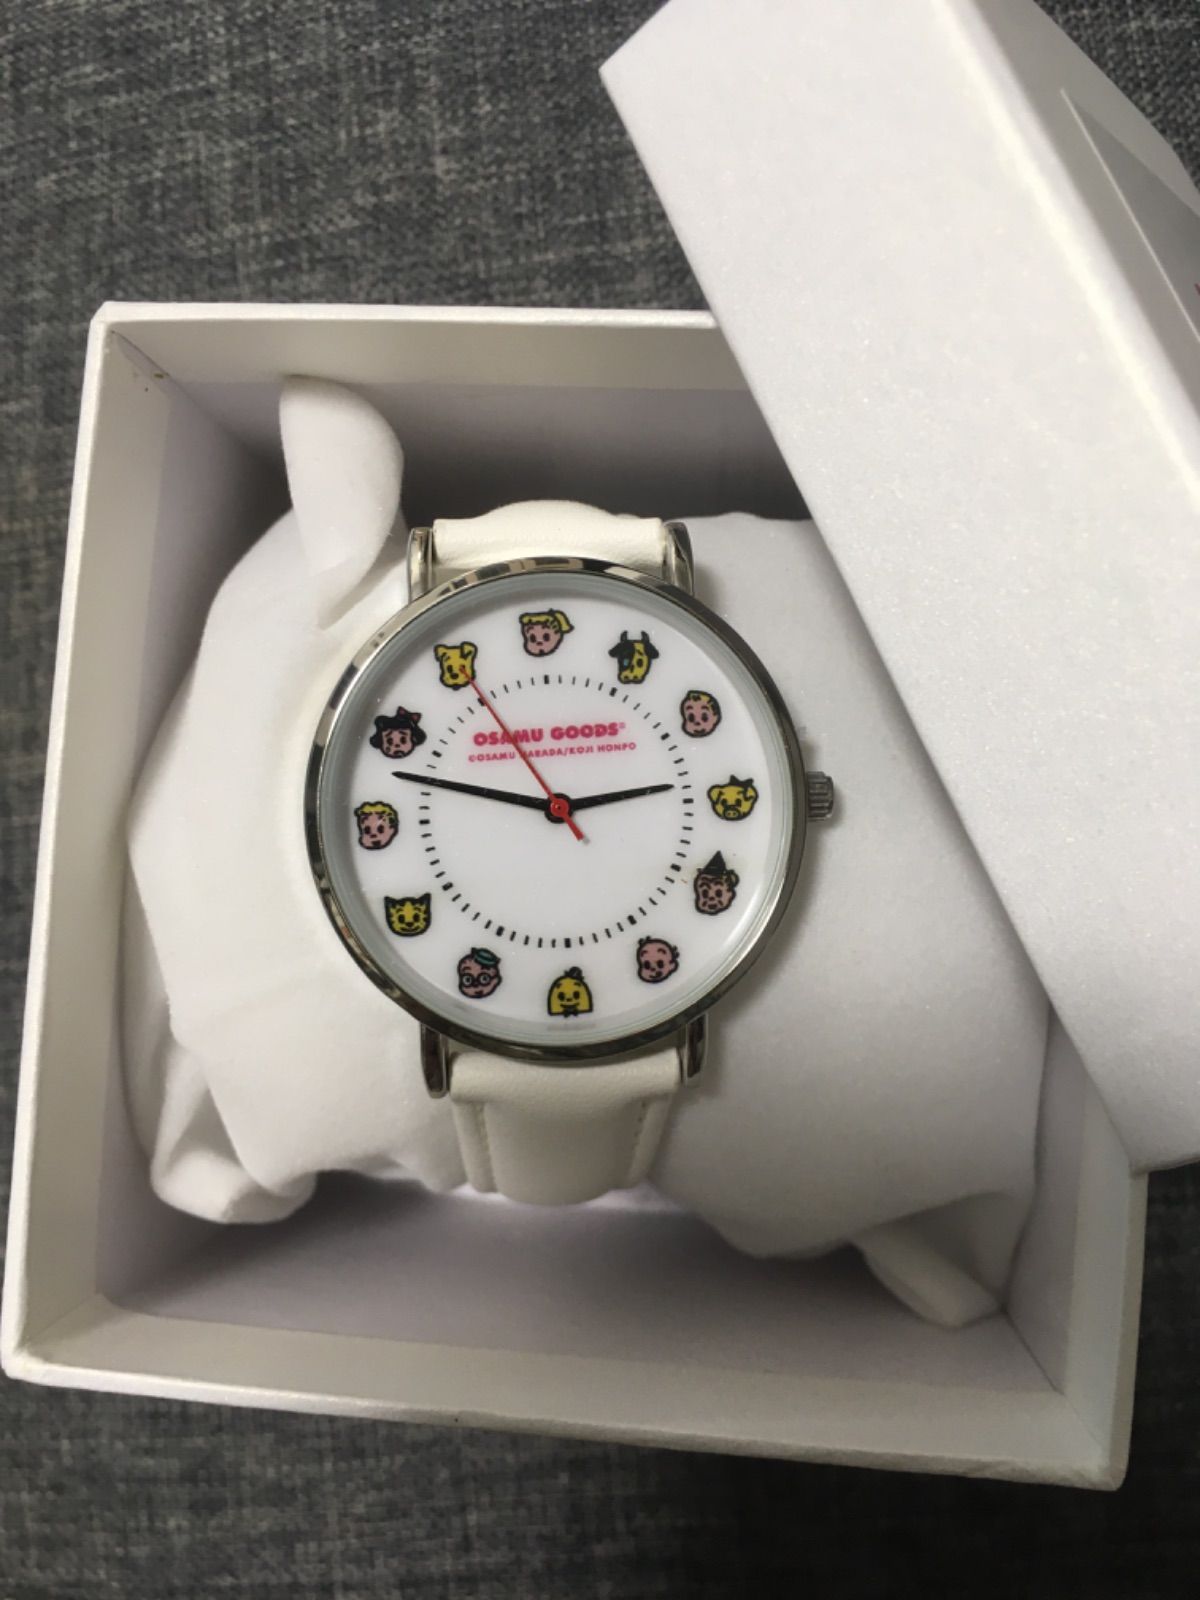 新品 オサムグッズ BEAUTY&YOUTH UNITED ARROWS 腕時計 - ぴっぴき商店